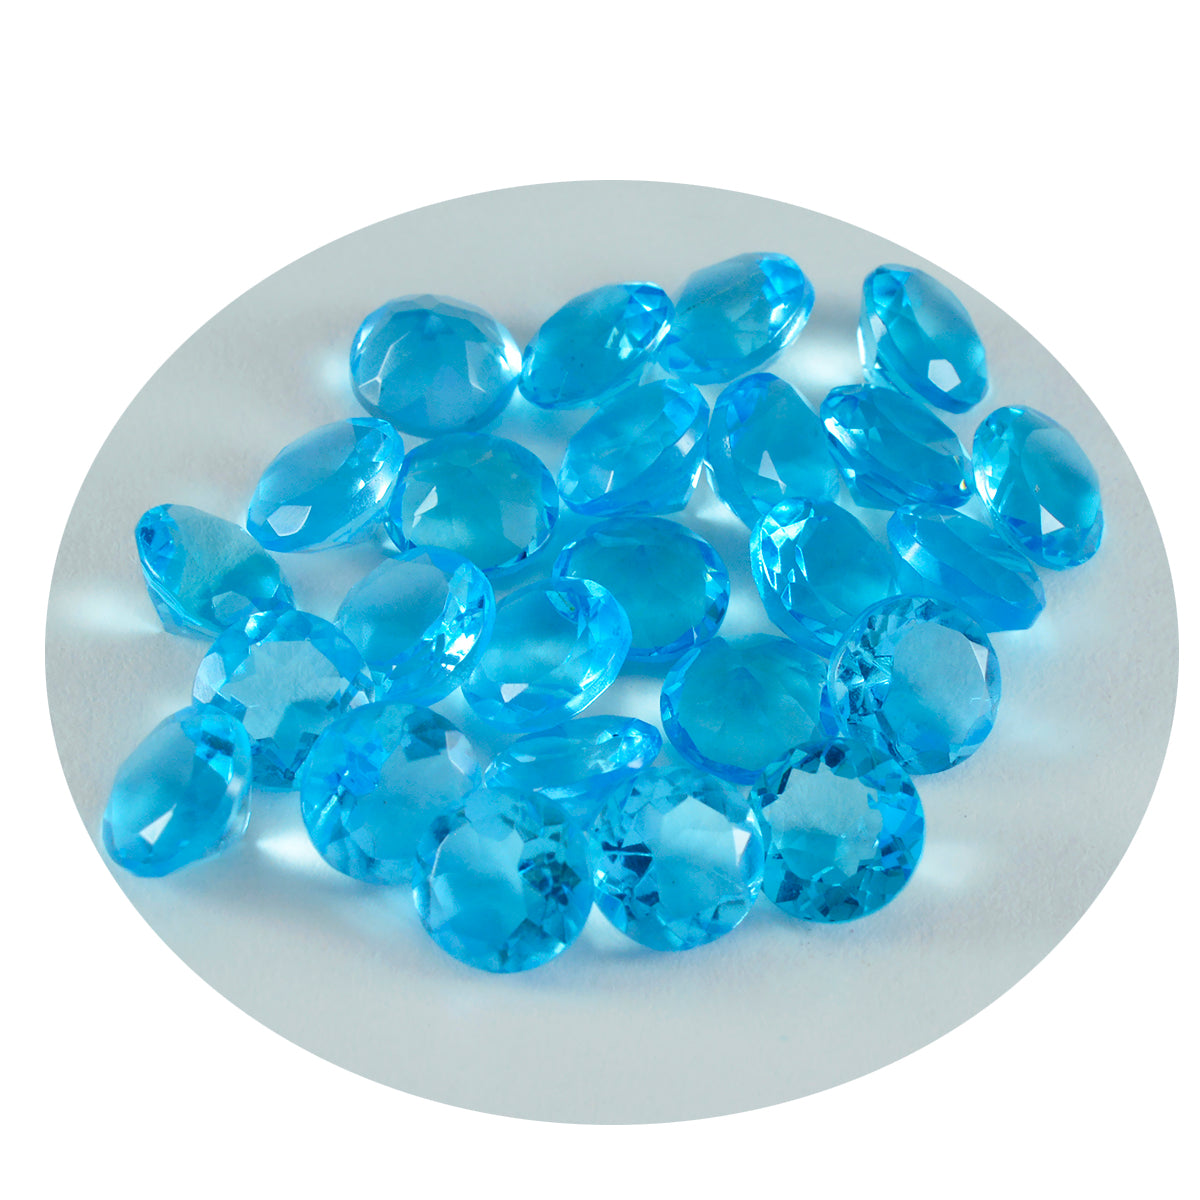 Riyogems 1pc topaze bleue cz facettes 6x6mm forme ronde beauté qualité pierres précieuses en vrac